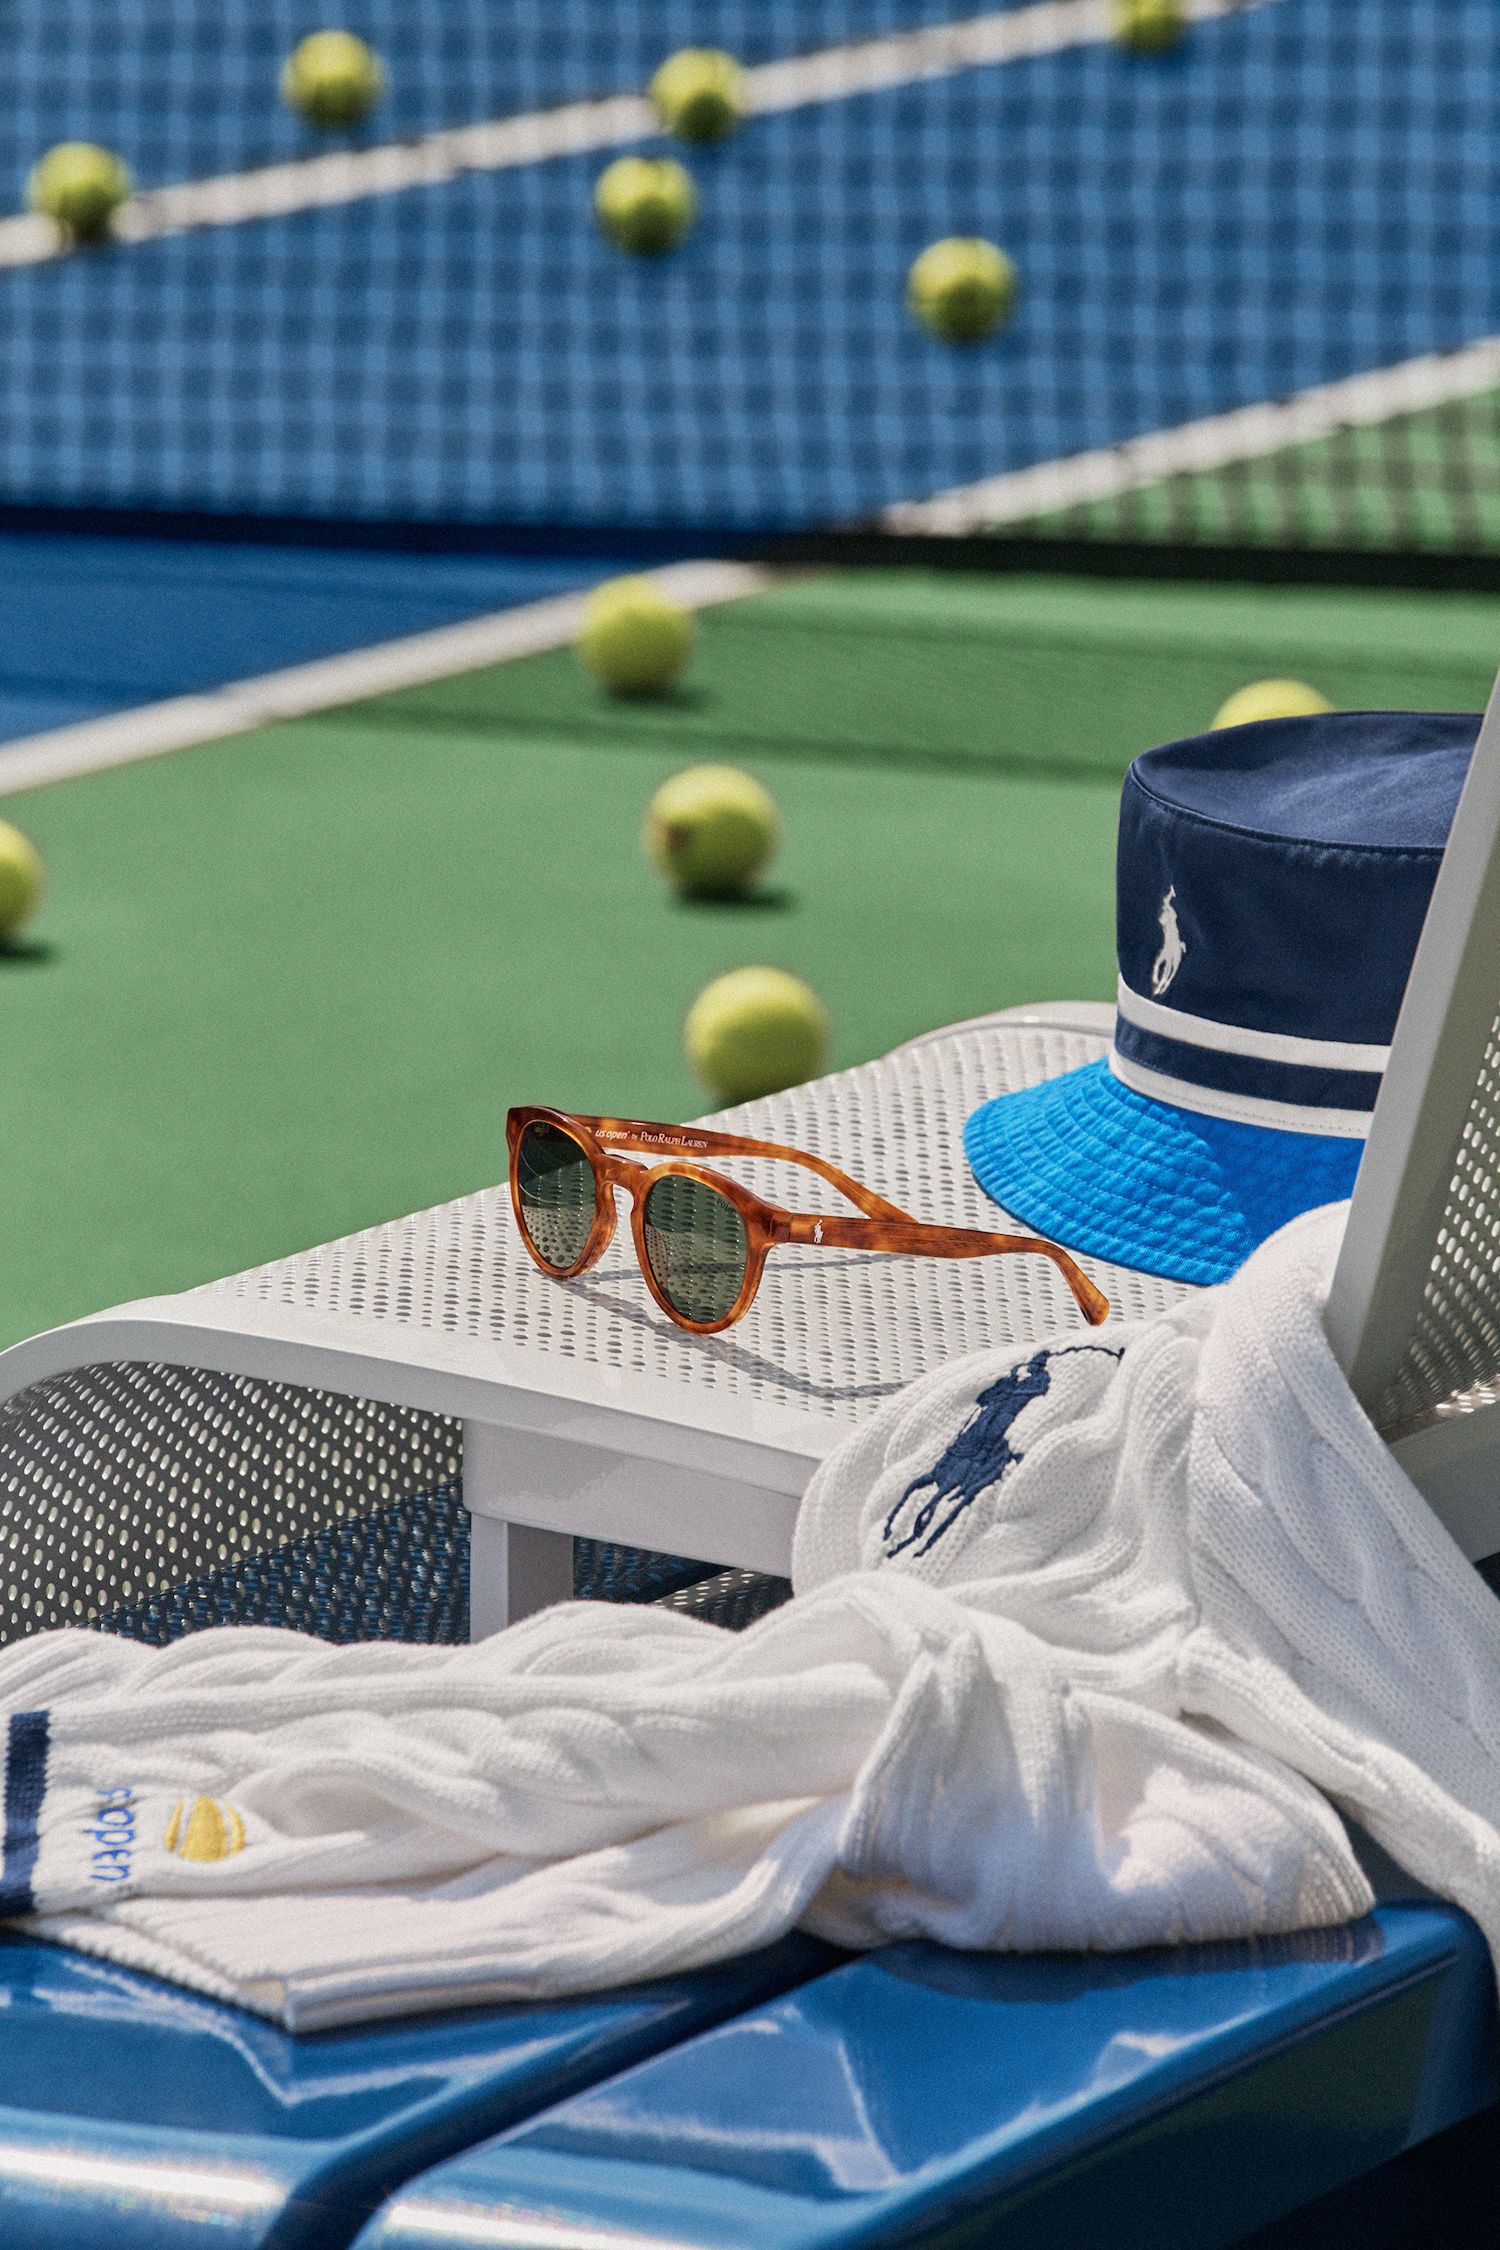 Ralph Lauren Reveals 2023 U.S. Open Tennis Collection & Uniform